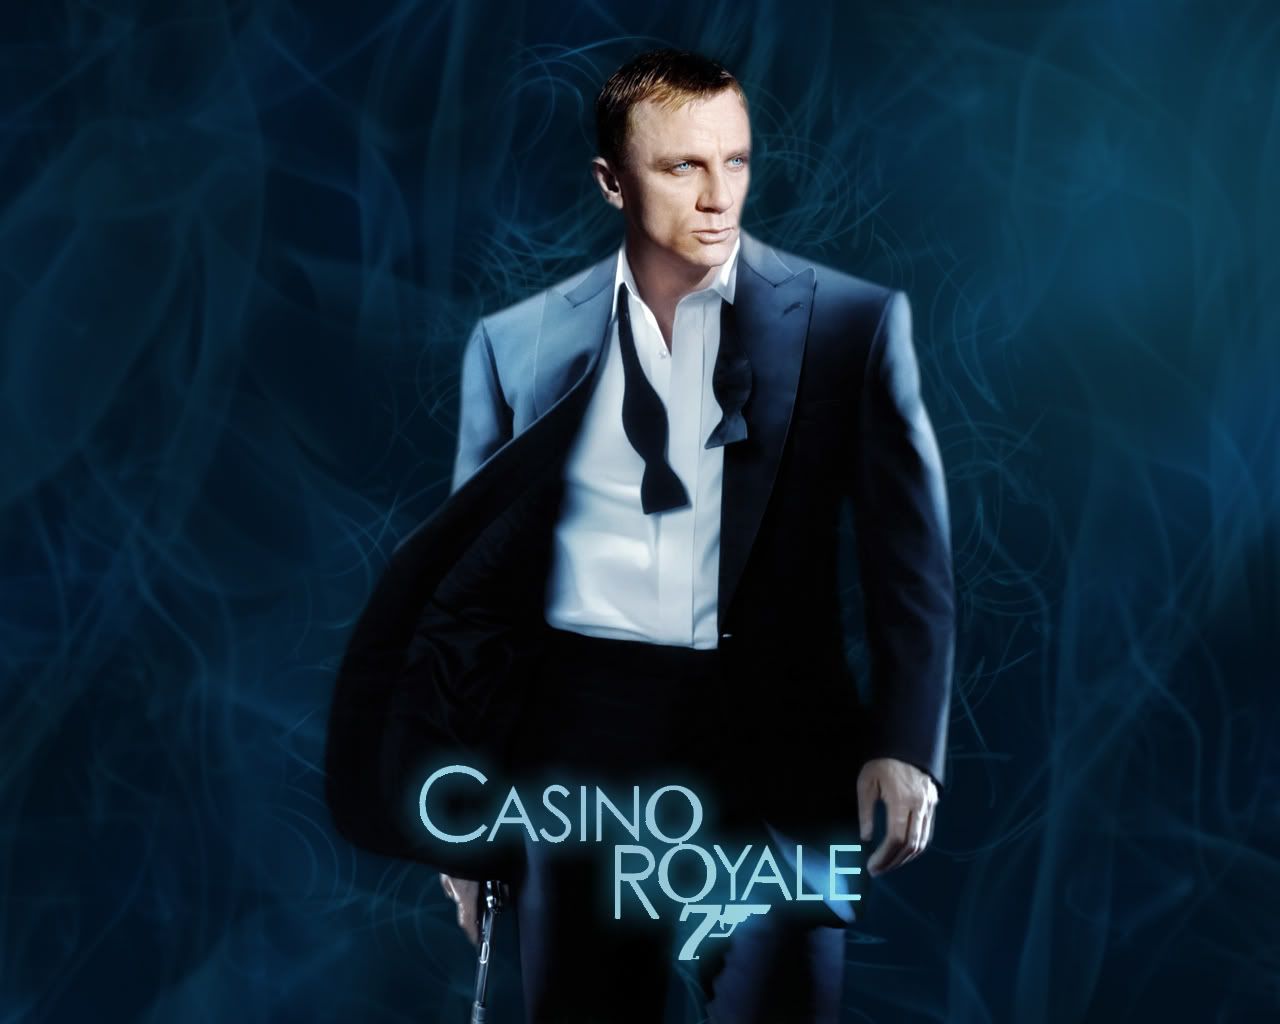 CasinoRoyaleWallpaper.jpg Casino Royale Wallpaper